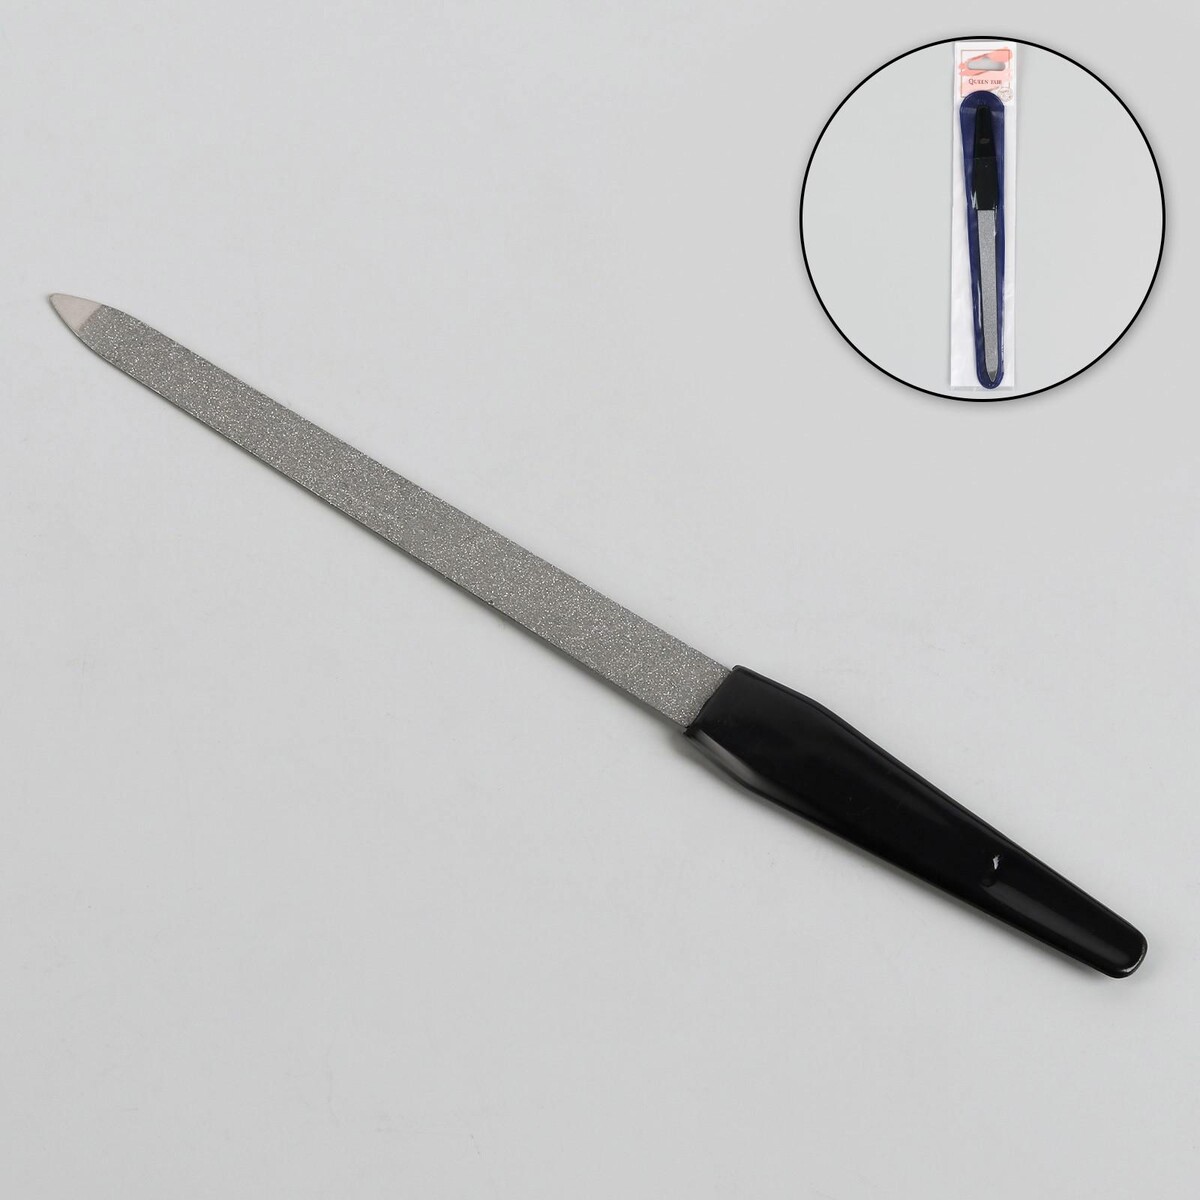 Пилка металлическая для ногтей, 17 см, в чехле, цвет серебристый/черный пилка металлическая для ногтей прорезиненная ручка 17 см серебристый